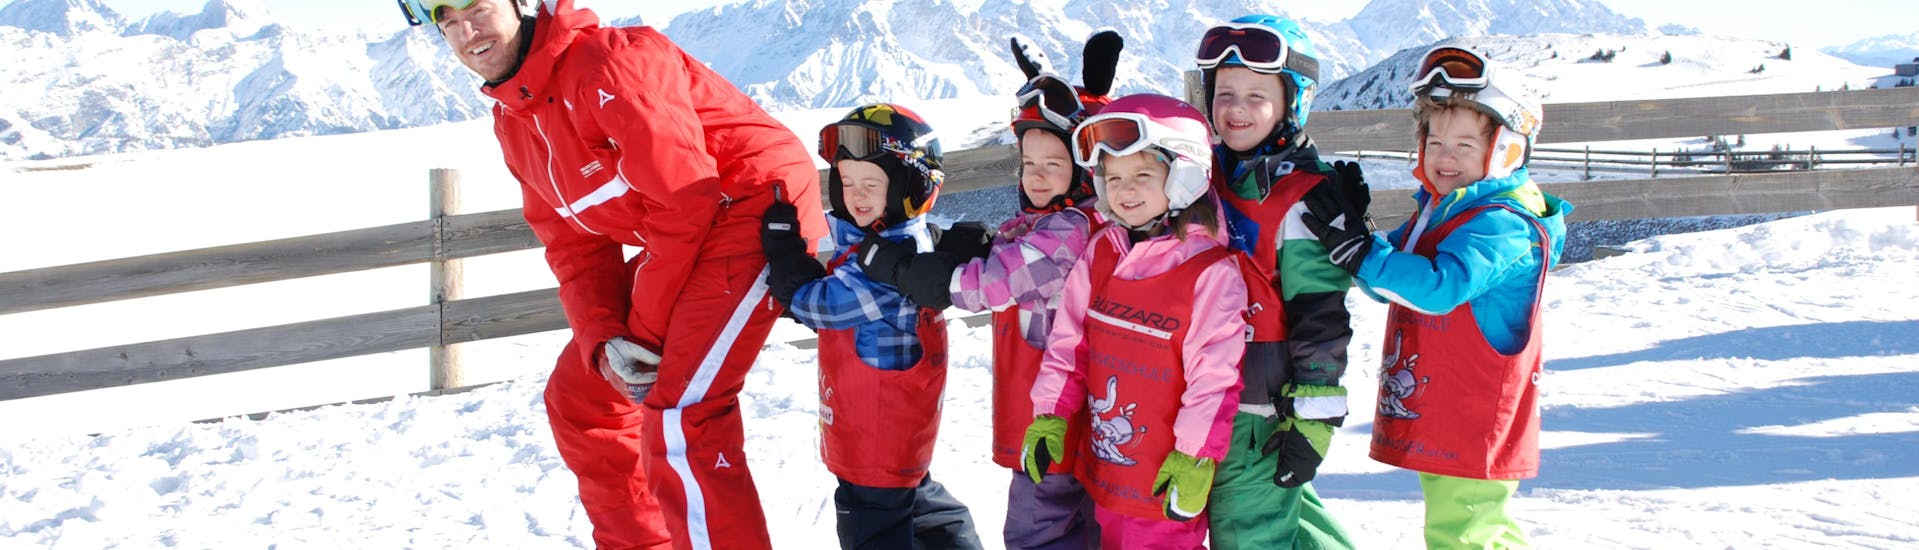 Skilessen voor Kinderen "Zwergerl" (3-4 jaar) voor Beginners.